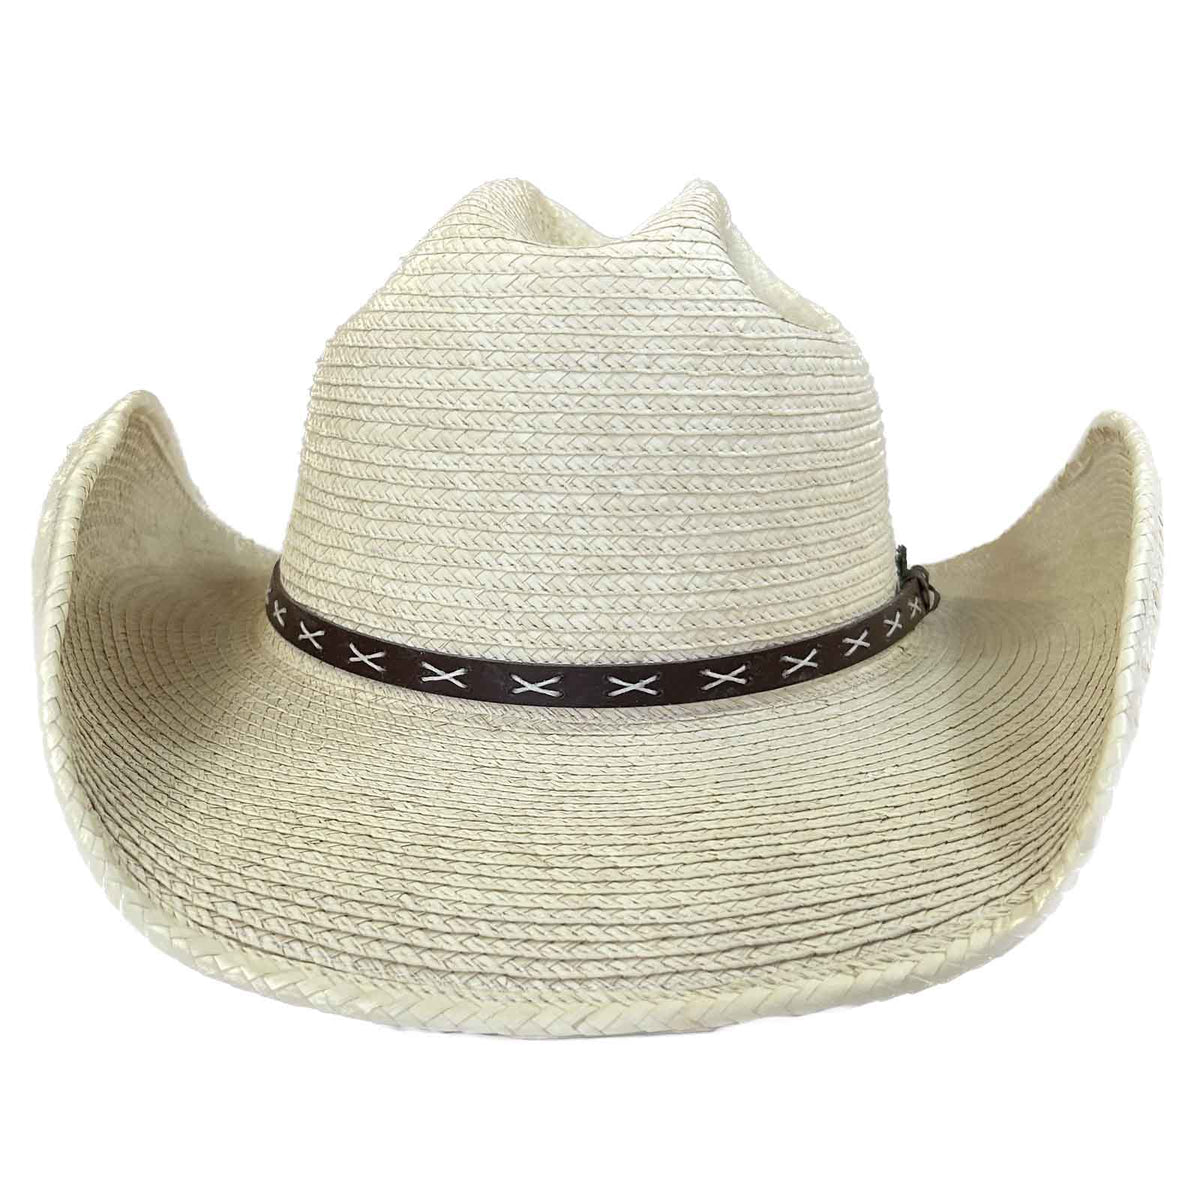 Straw Palm X Band Rolled Western Cowboy Hat